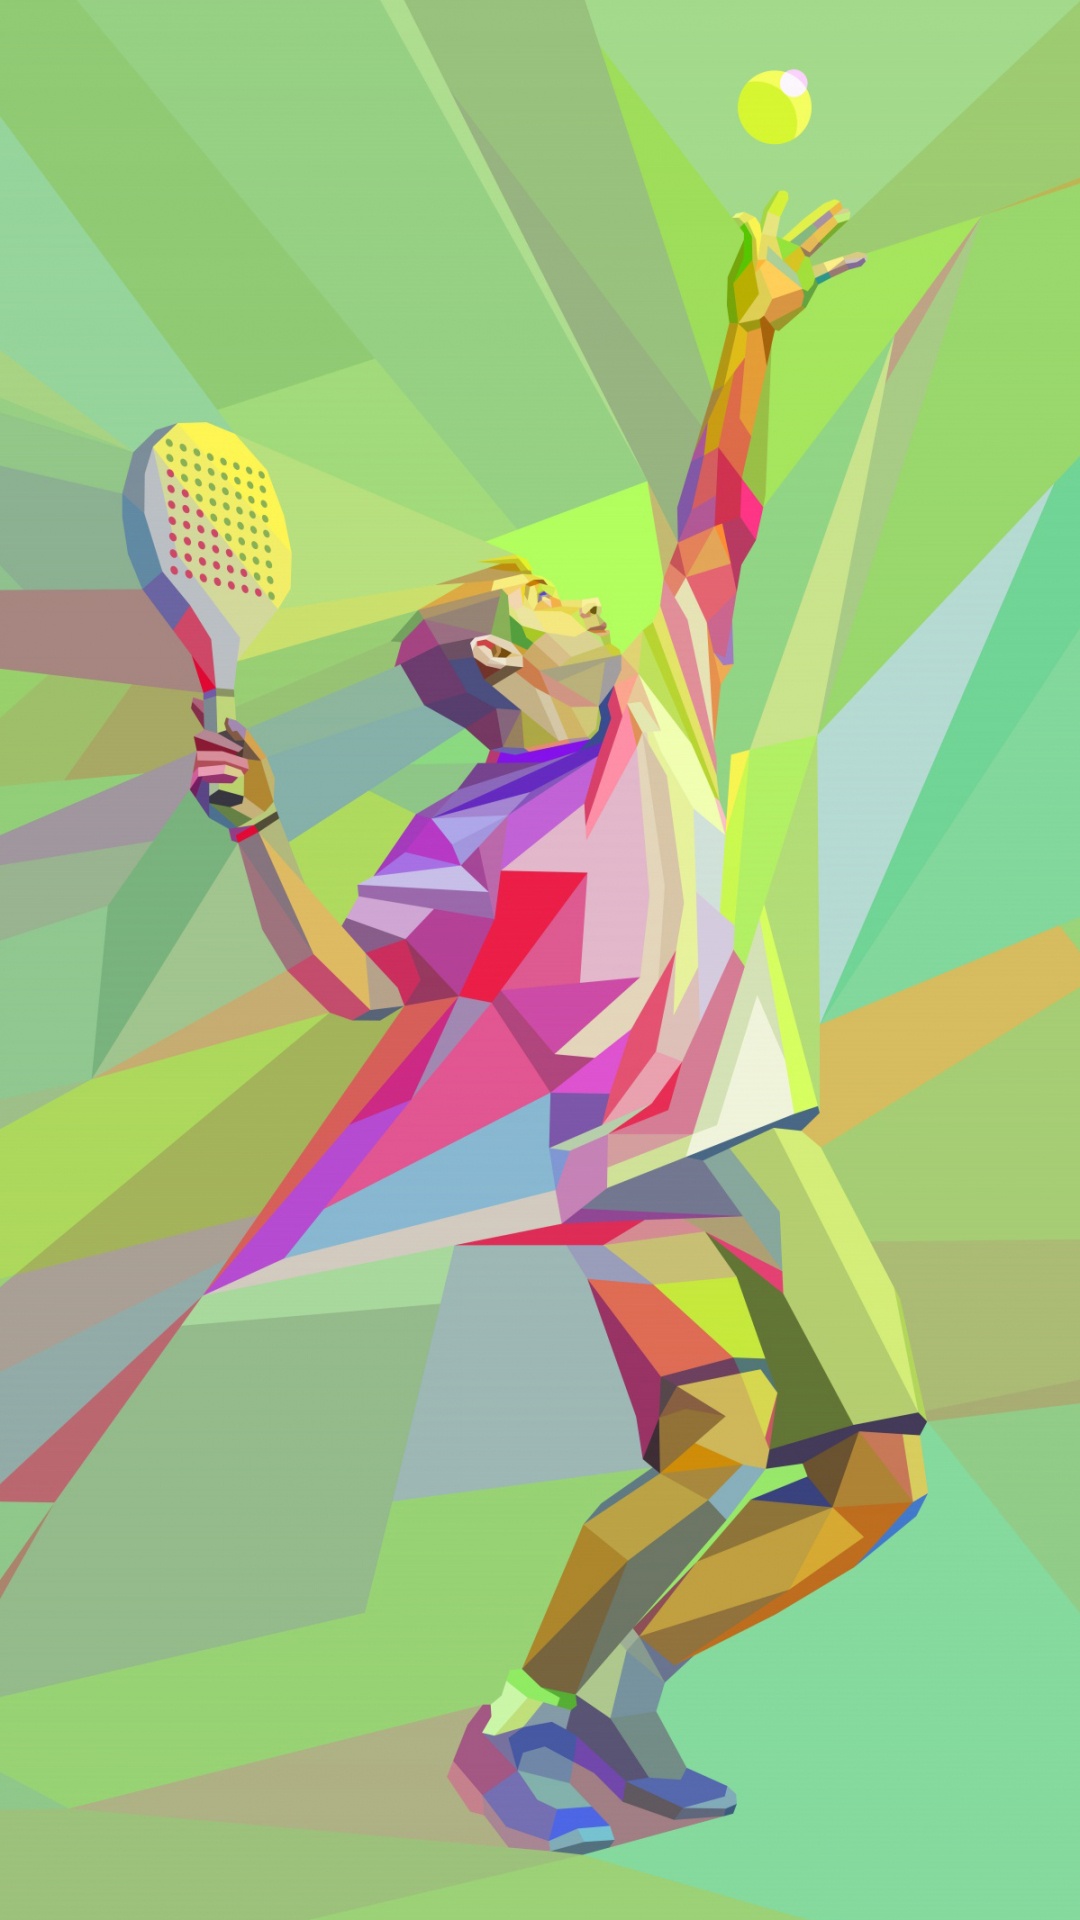 网球, 图形设计, 艺术, 温布尔登网球赛的冠军, 乐趣 壁纸 1080x1920 允许